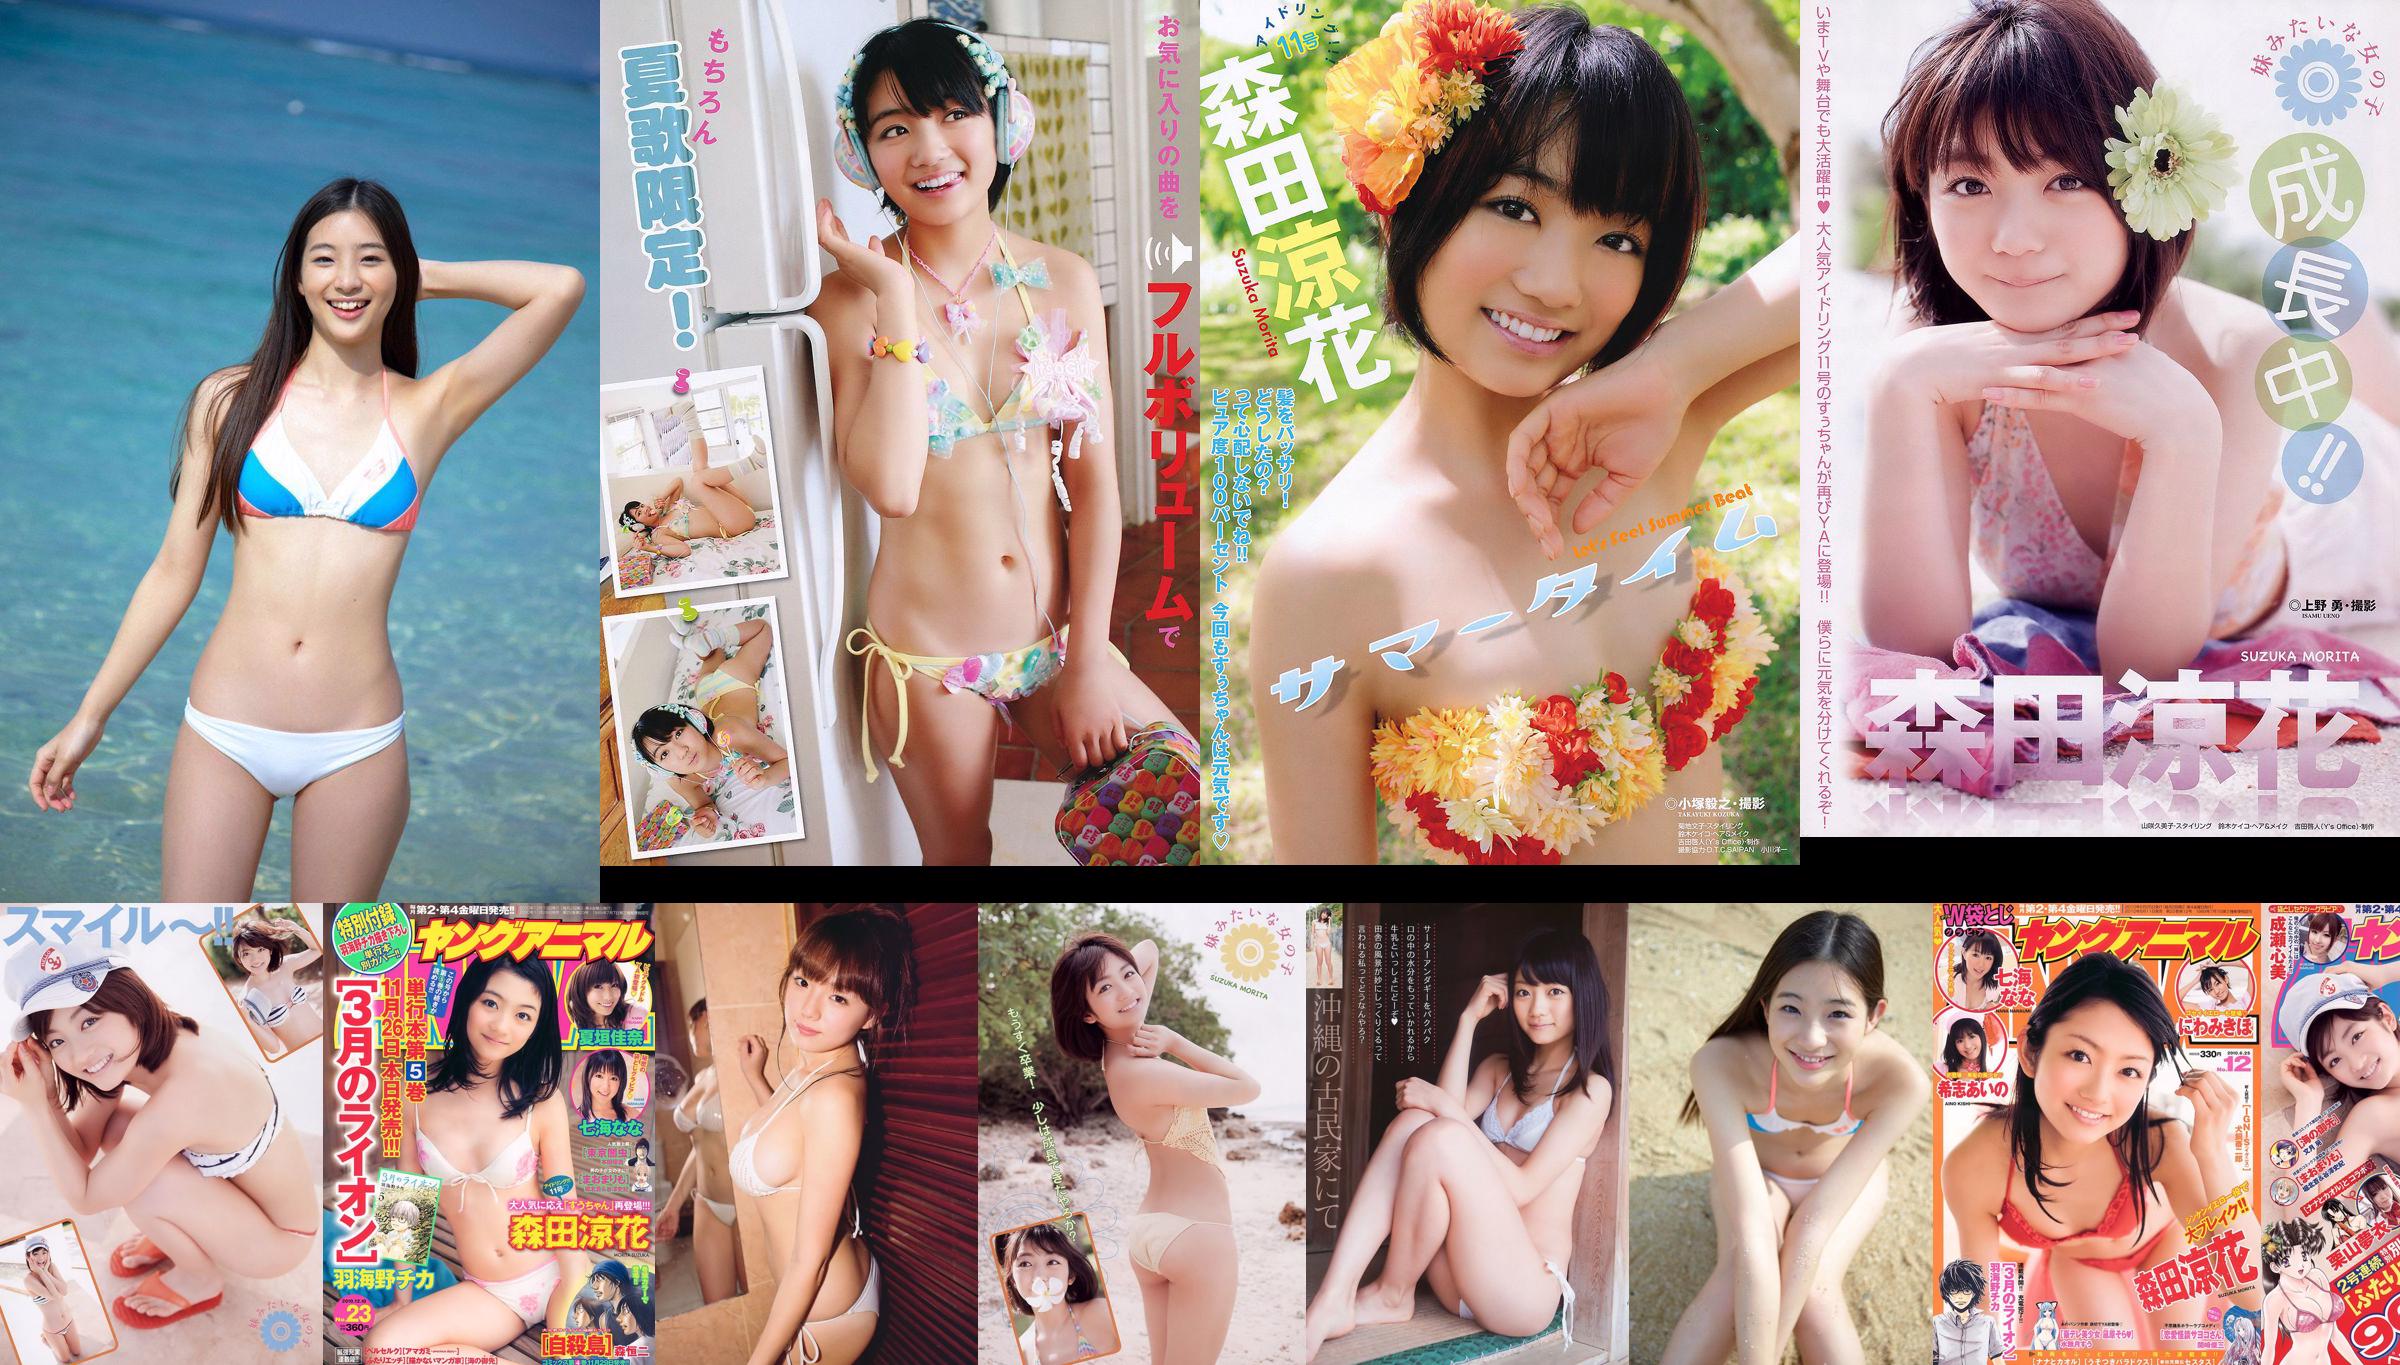 [Weekly Big Comic Spirits] Akari Hayami 2014 No.46 Photograph No.0986fa Page 3